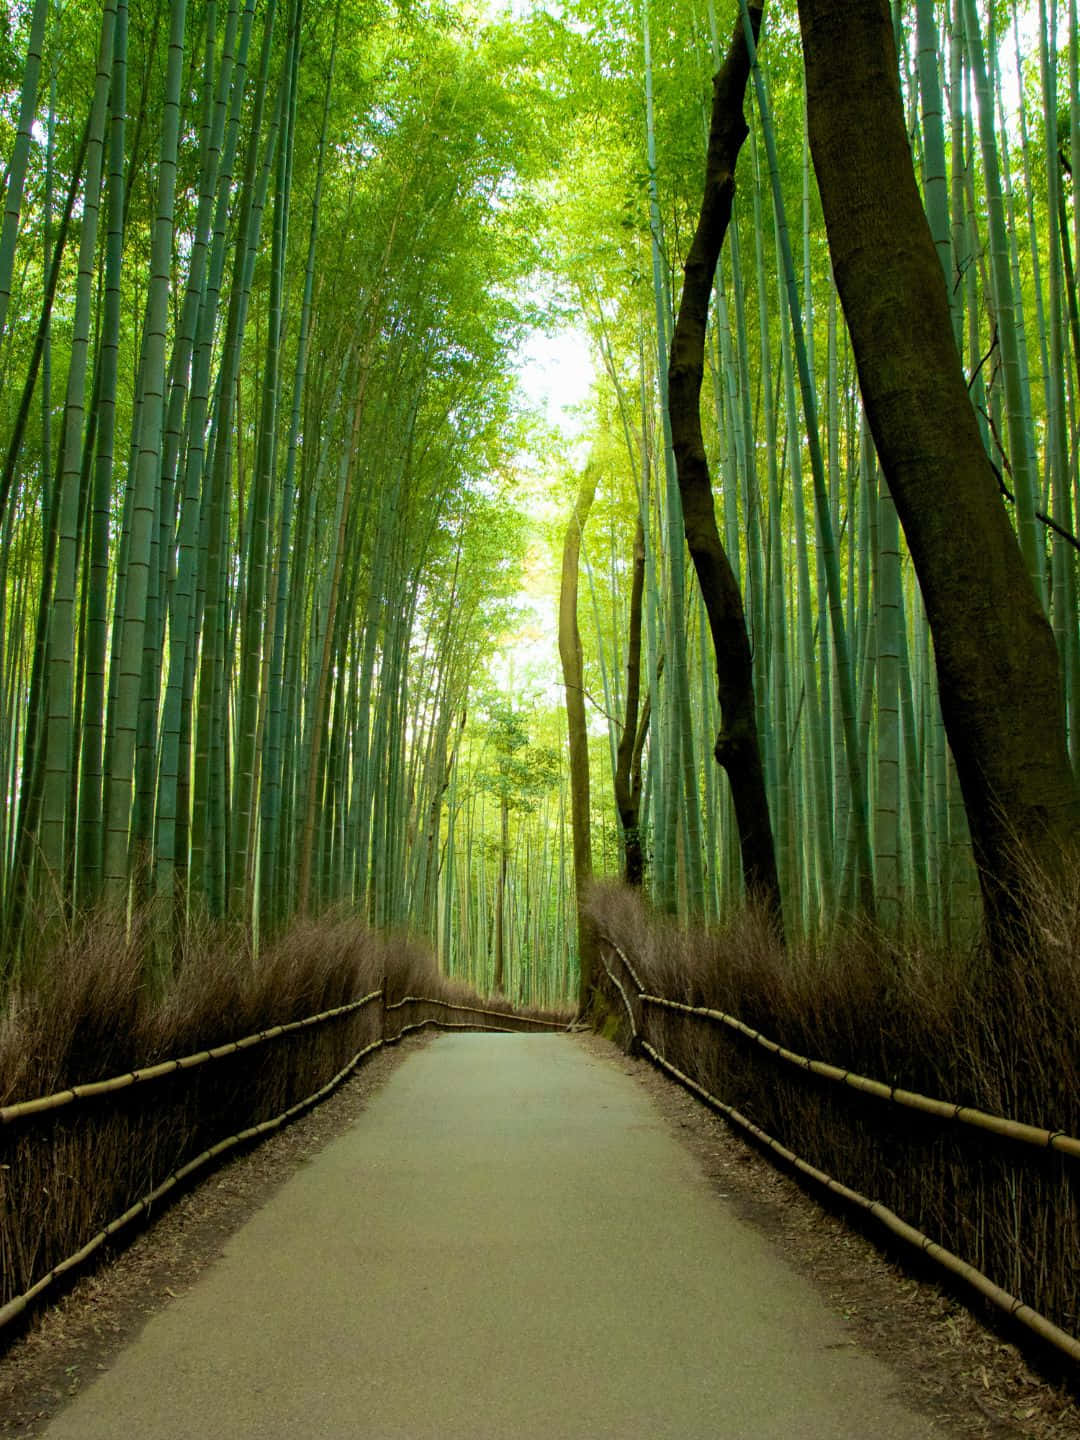 Fondode Pantalla De Bambú En 1440p, Camino Suave Rodeado De Árboles De Bambú.